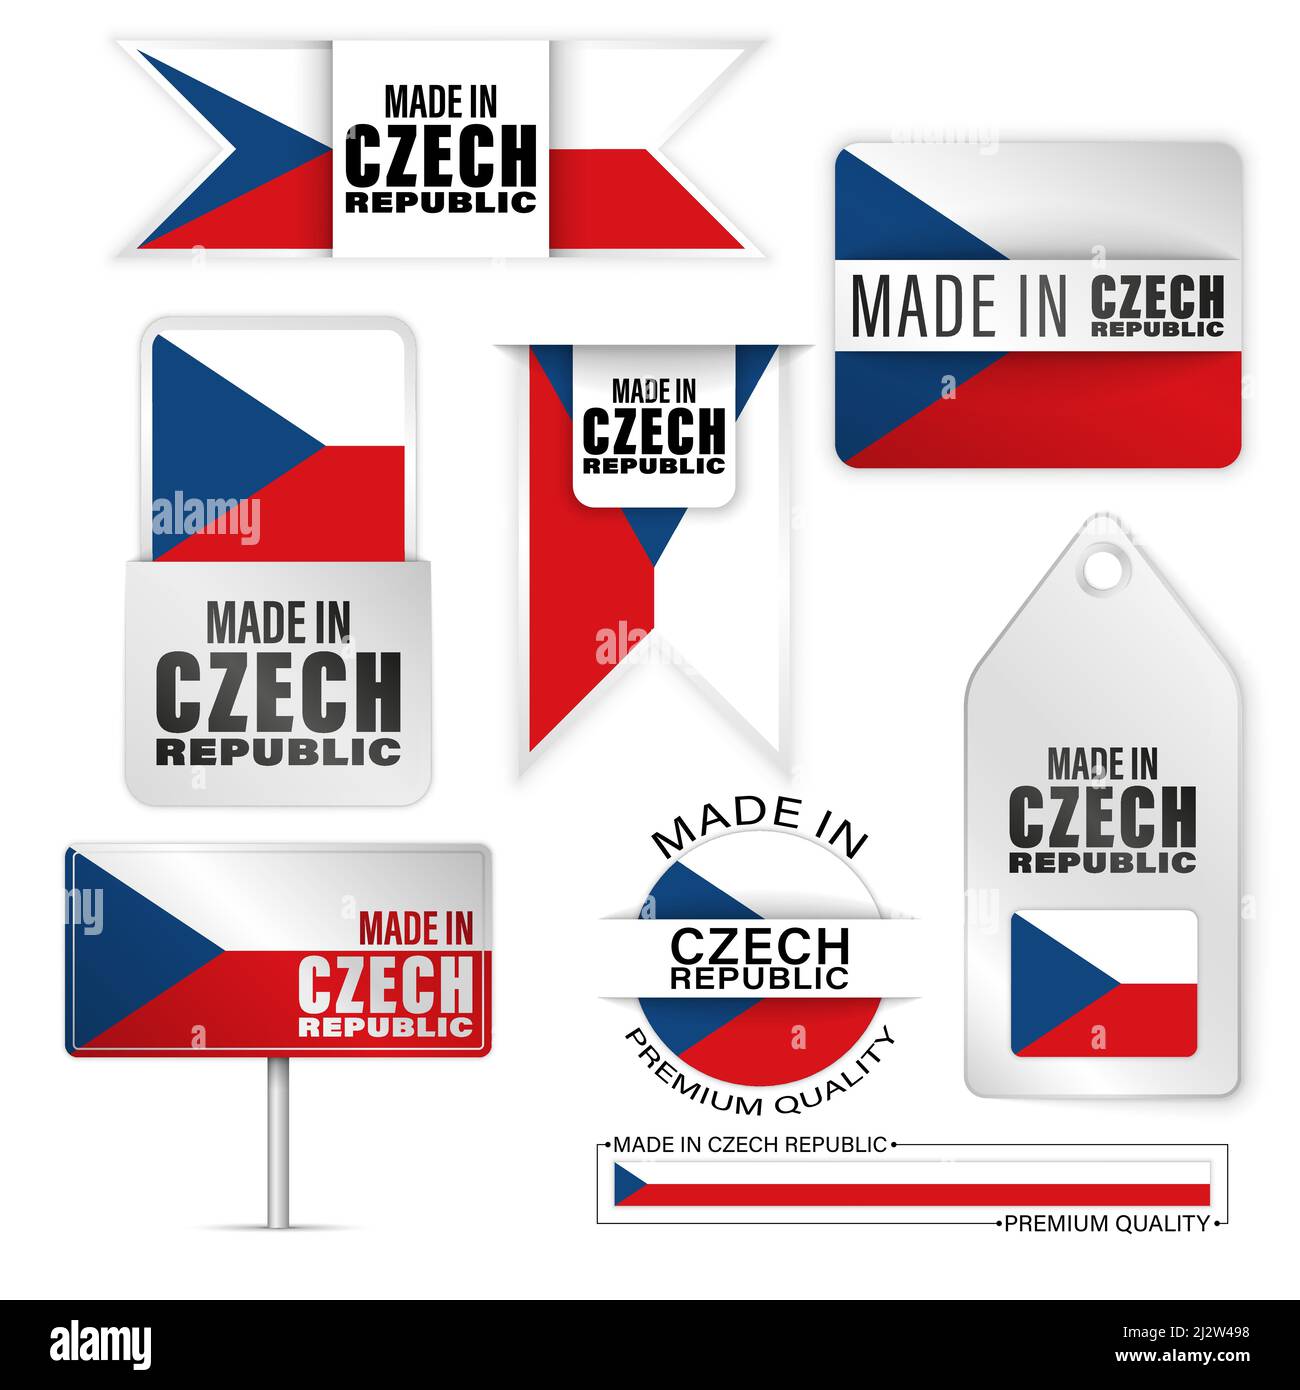 Realizzato in set di etichette e grafici cechi. Alcuni elementi di impatto per l'uso che si desidera fare di esso. Illustrazione Vettoriale